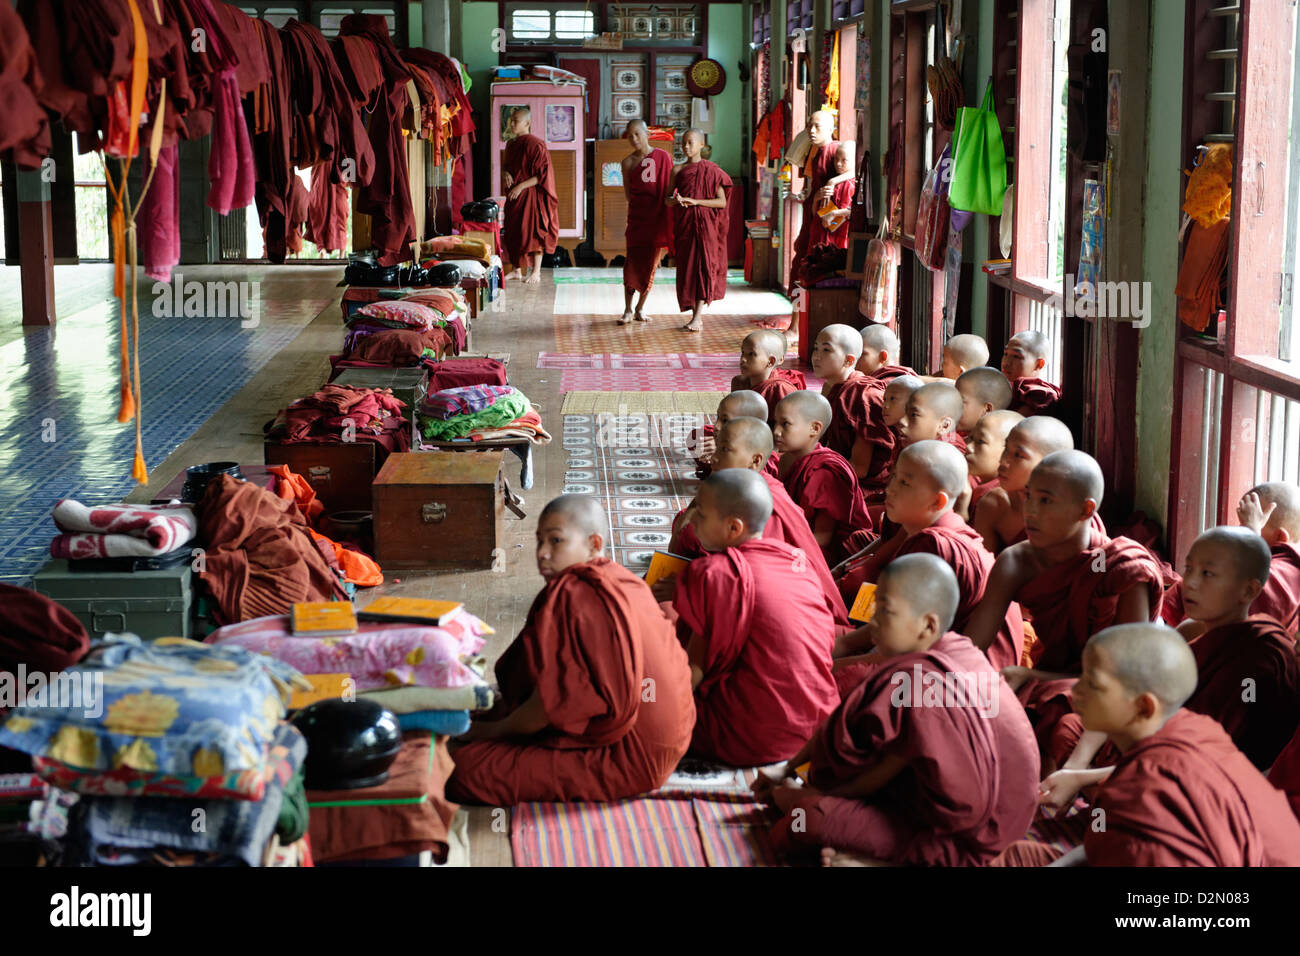 Lat Pan Kone monastère, Indaw, Rhône-Alpes, République de l'Union du Myanmar (Birmanie), l'Asie Banque D'Images